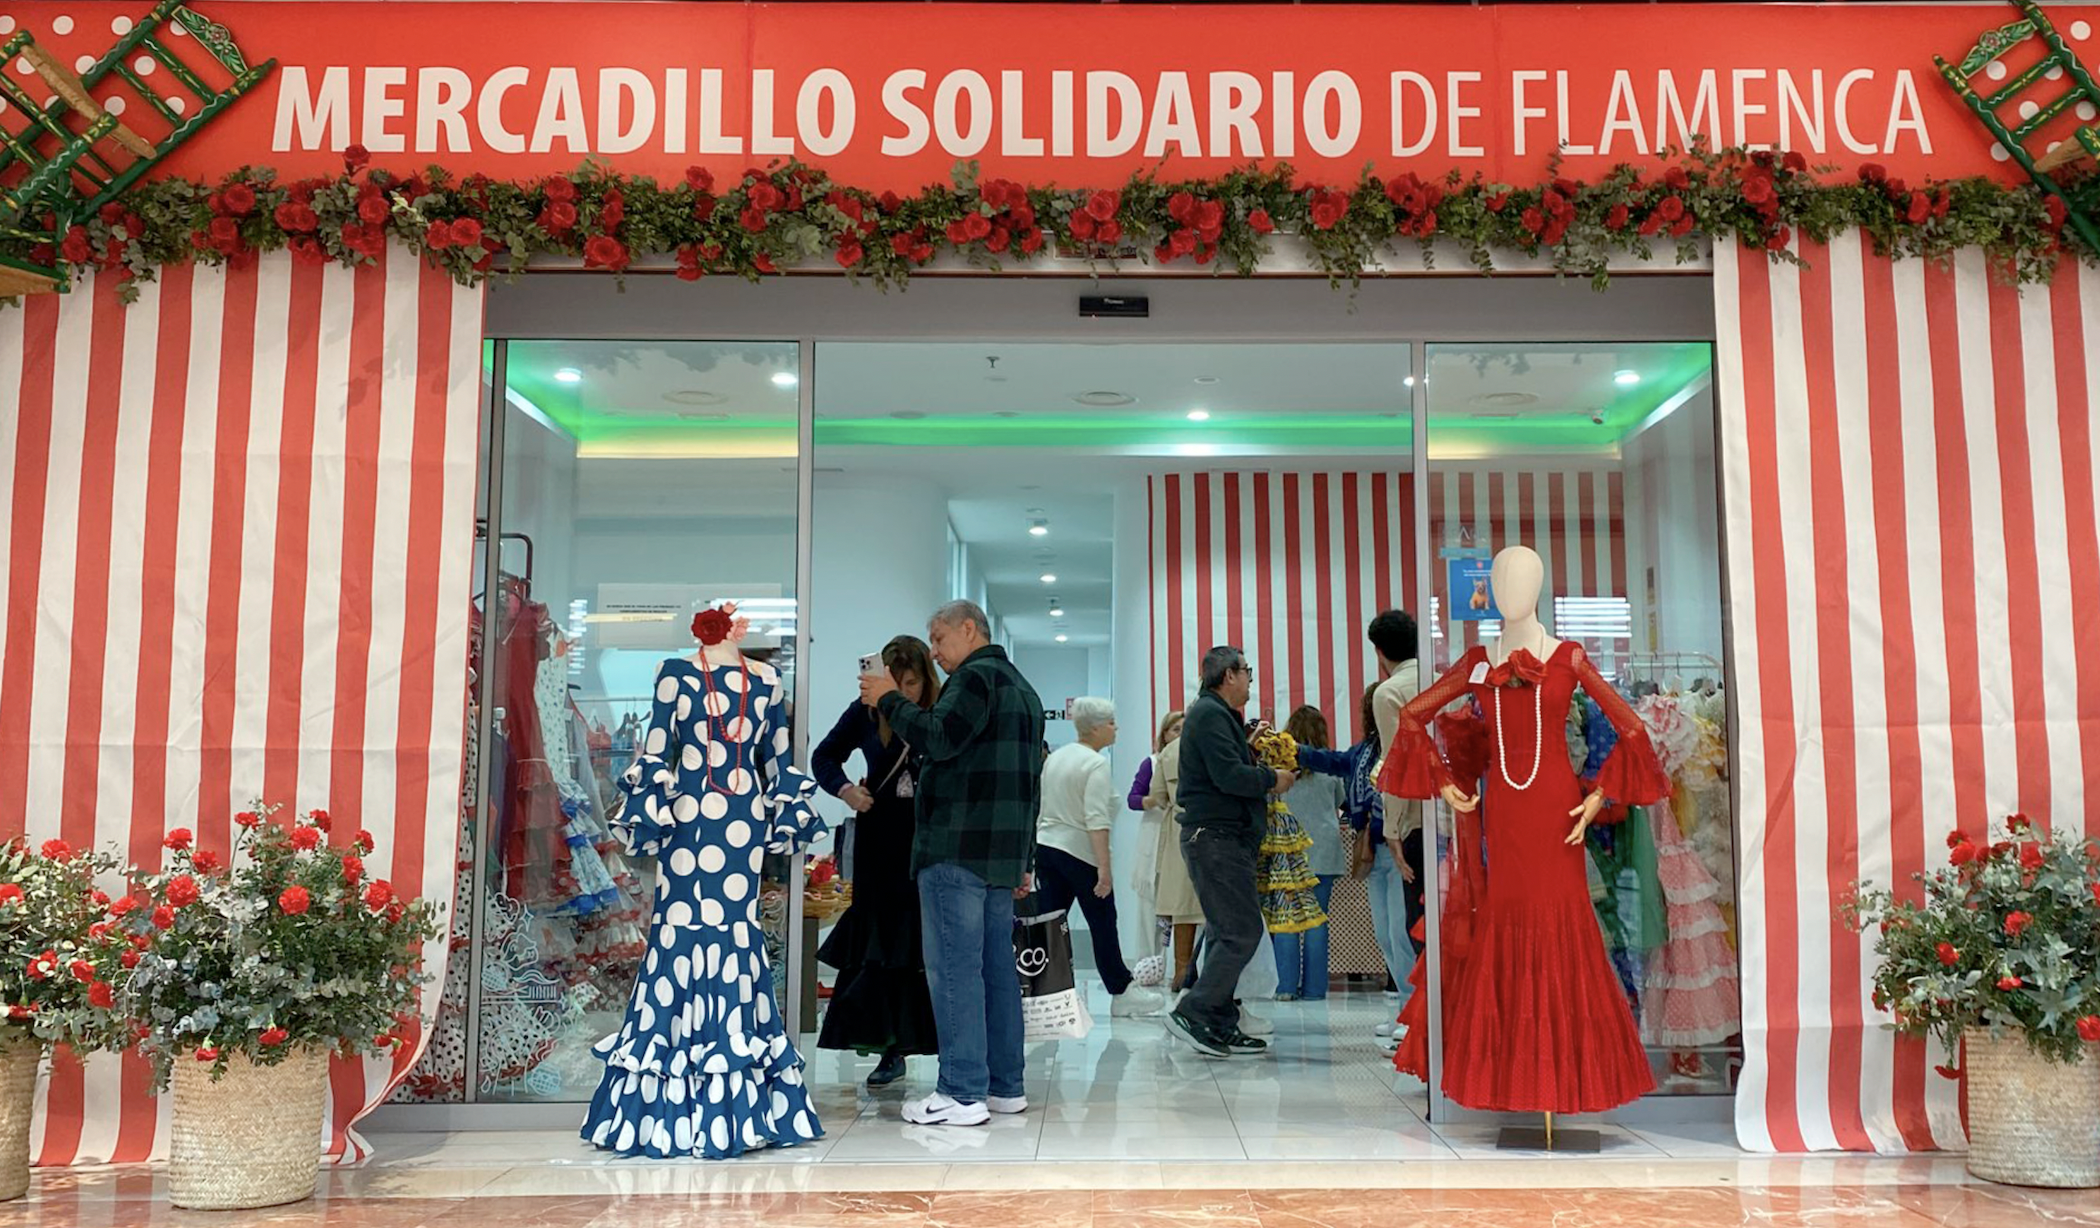 Mercadillo solidario de trajes de flamenca en el centro comercial Área Sur, en Jerez.